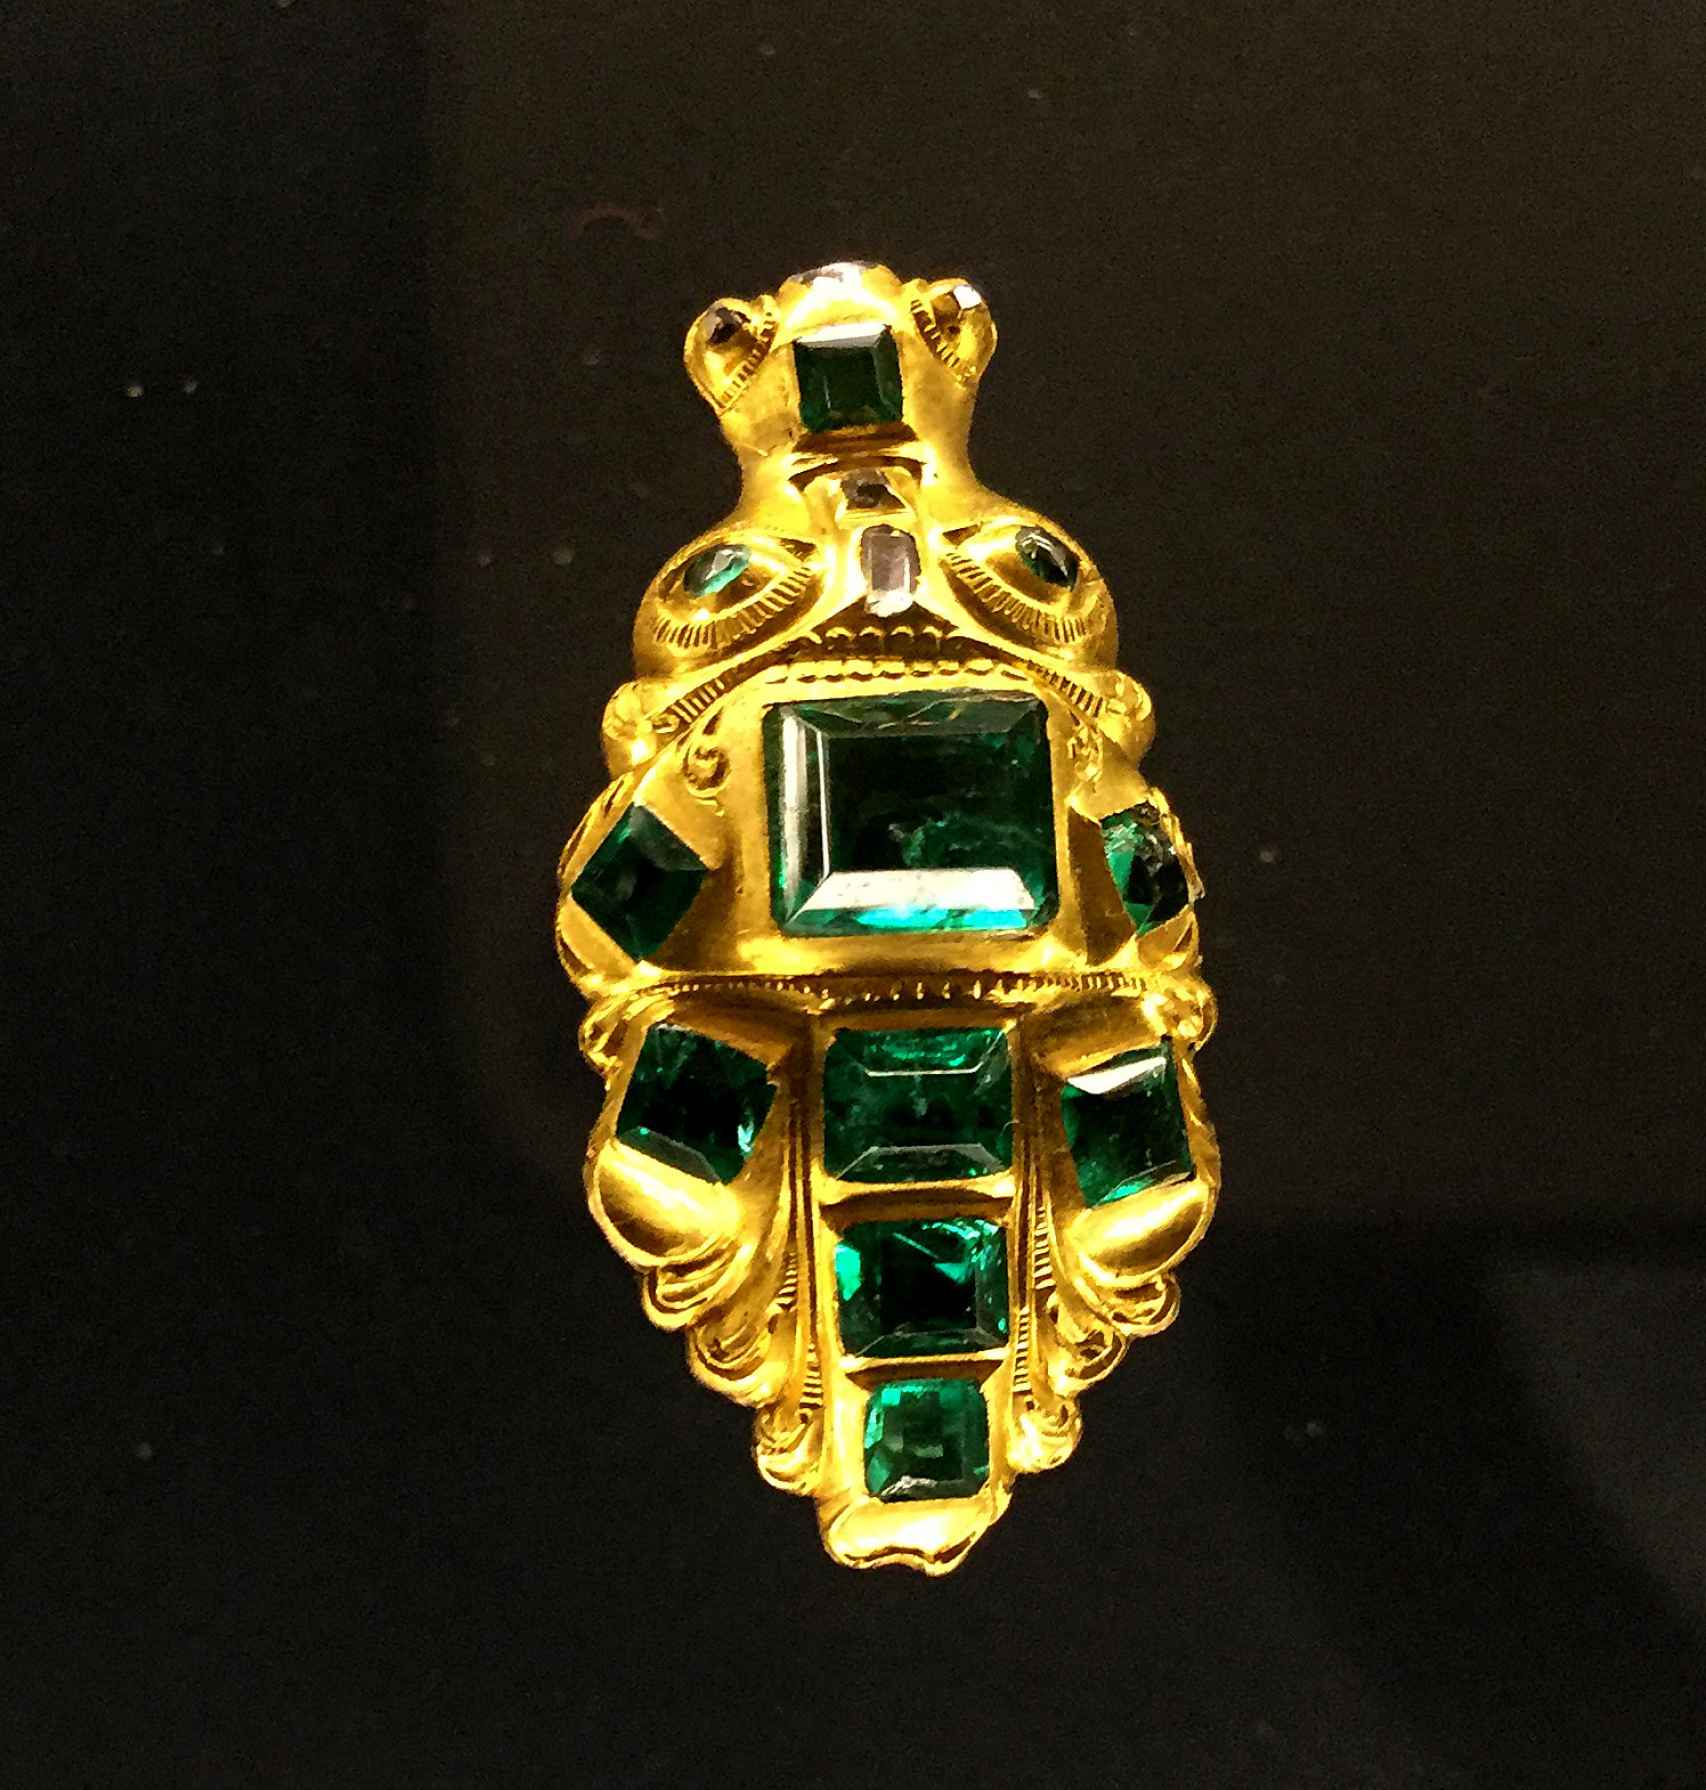 emerge la carga de joyas de oro y gemas de un barco español que naufragó en méxico en el siglo xviii